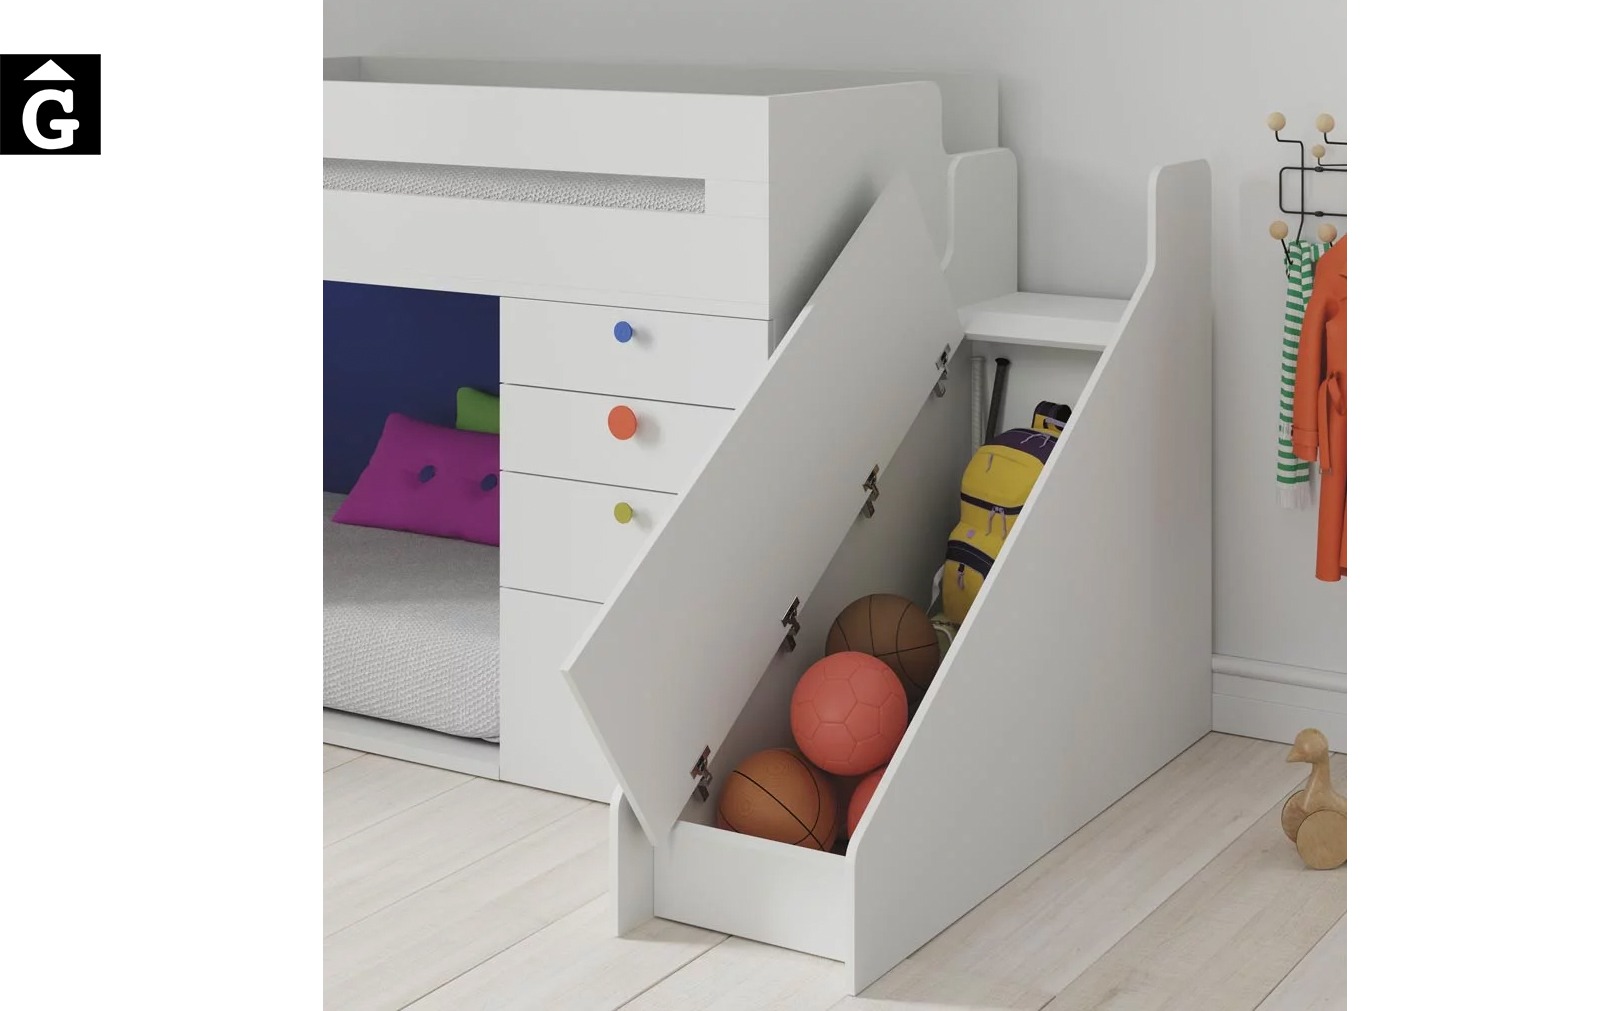 Habitació infantil amb llit tobogan | detall espai per desar sota tobogan | llits abatibles | Pràctics, saludables i segurs | Jotajotape | mobles Gifreu